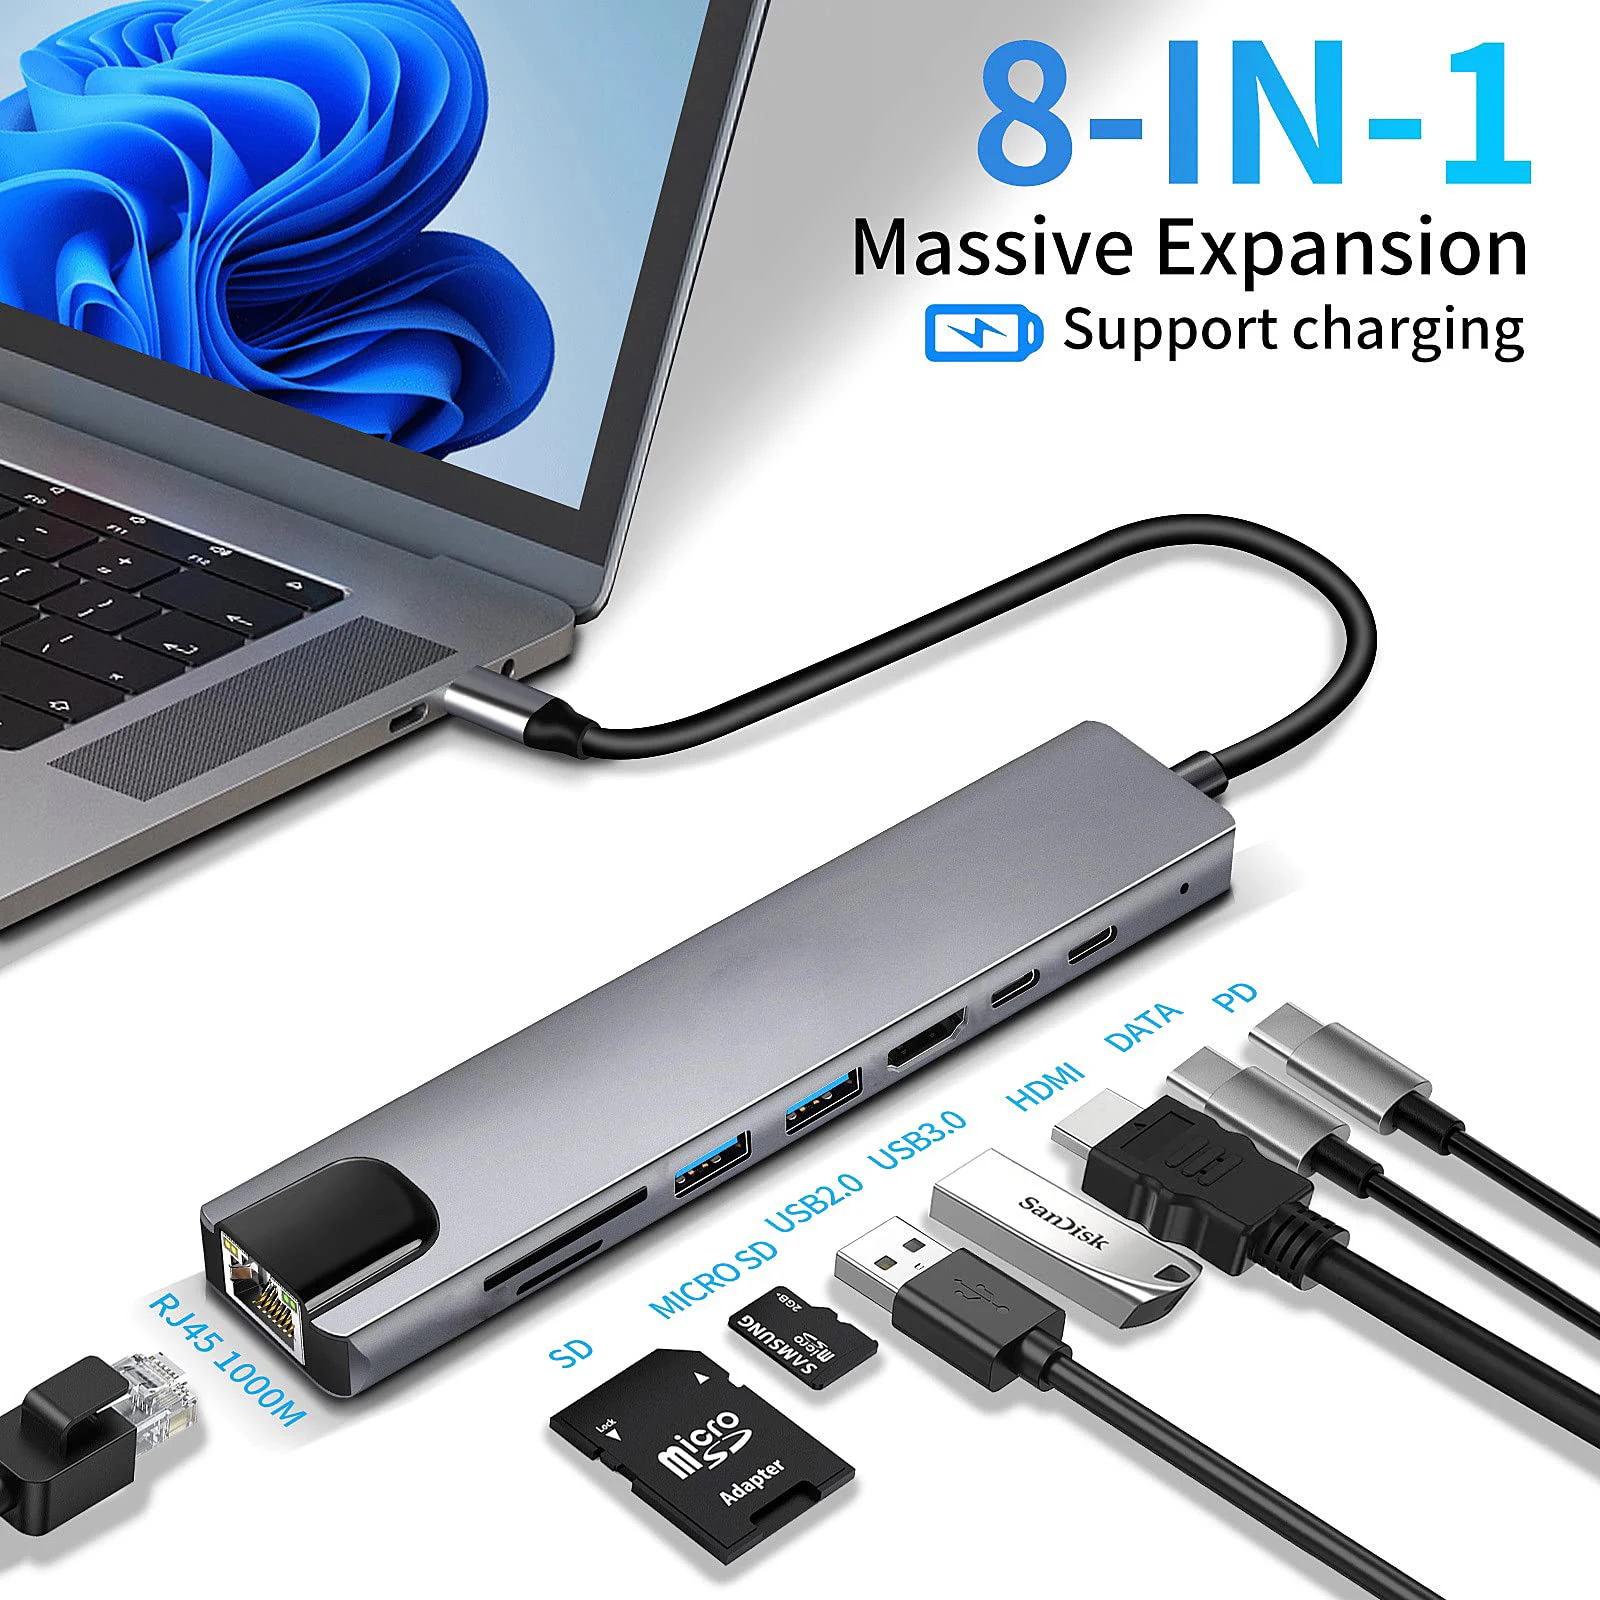 USB C 허브 C타입 HDMI 어댑터, RJ45 SD/TF 카드 리더기 포함, 맥북 노트북 윈도우 노트북 컴퓨터용 고속 충전기, 8 인 1, 4K